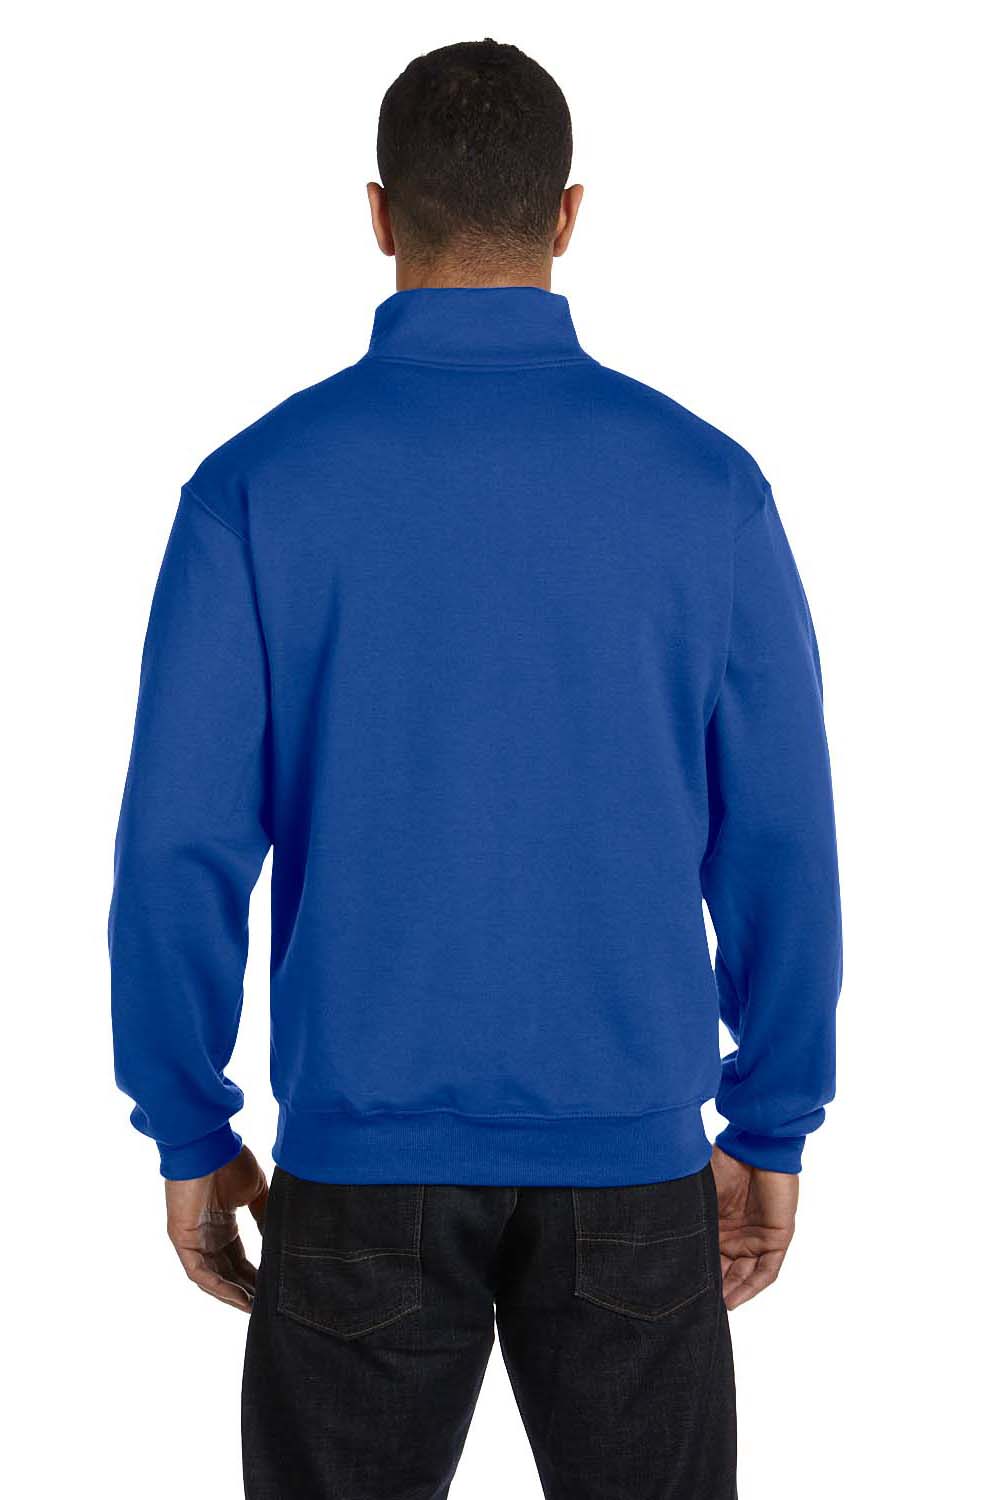 JERZEES - Nublend Cadet Collar Quarter-Zip Sweatshirt - 995MR